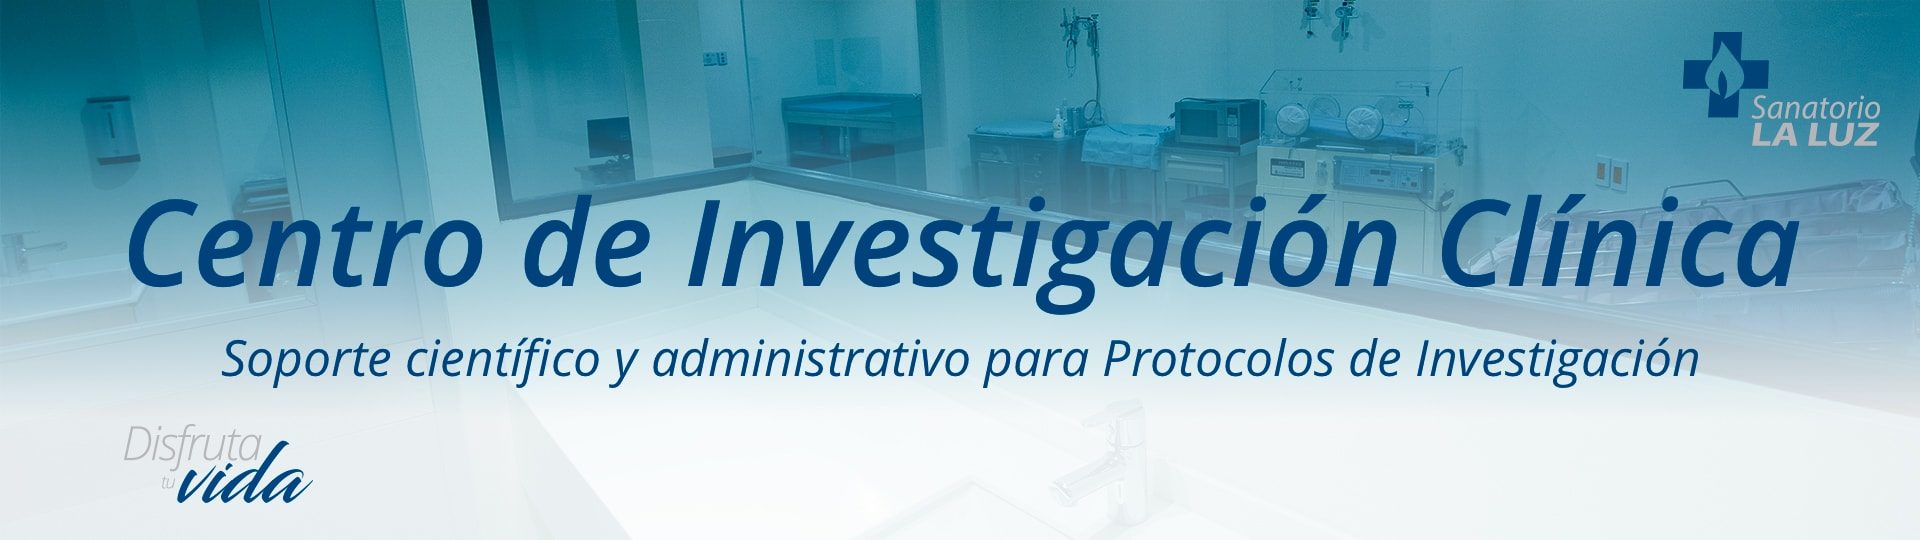 https://www.sanatoriolaluz.mx//wp-content/uploads/2018/01/Centro-de-Investigación-Clínica-Header-1920x540.jpg